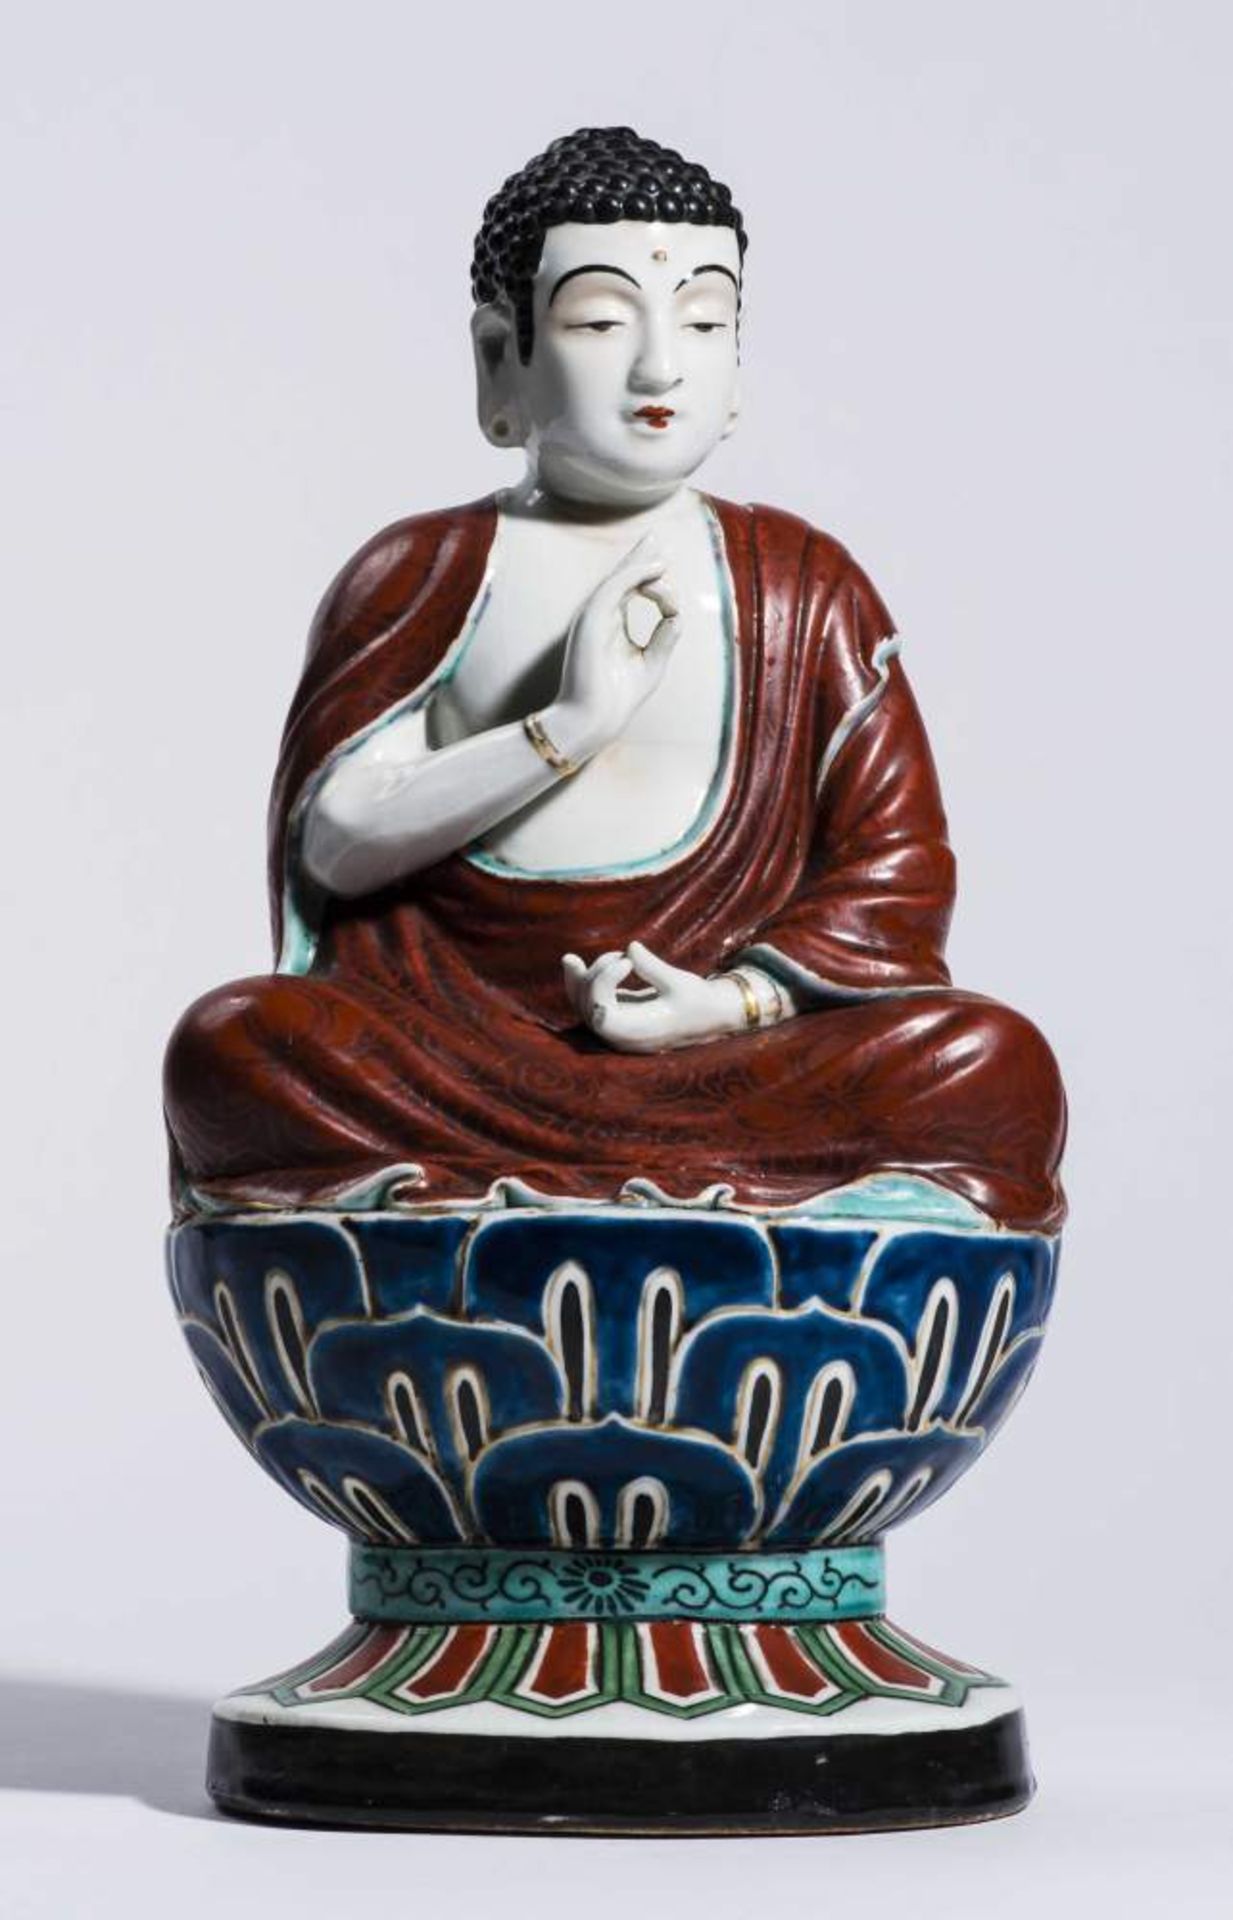 BUDDHAPorzellan mit Emailbemahlung. China, 20. Jh.Buddha sitzt auf einemhohen Lotussockel. Die